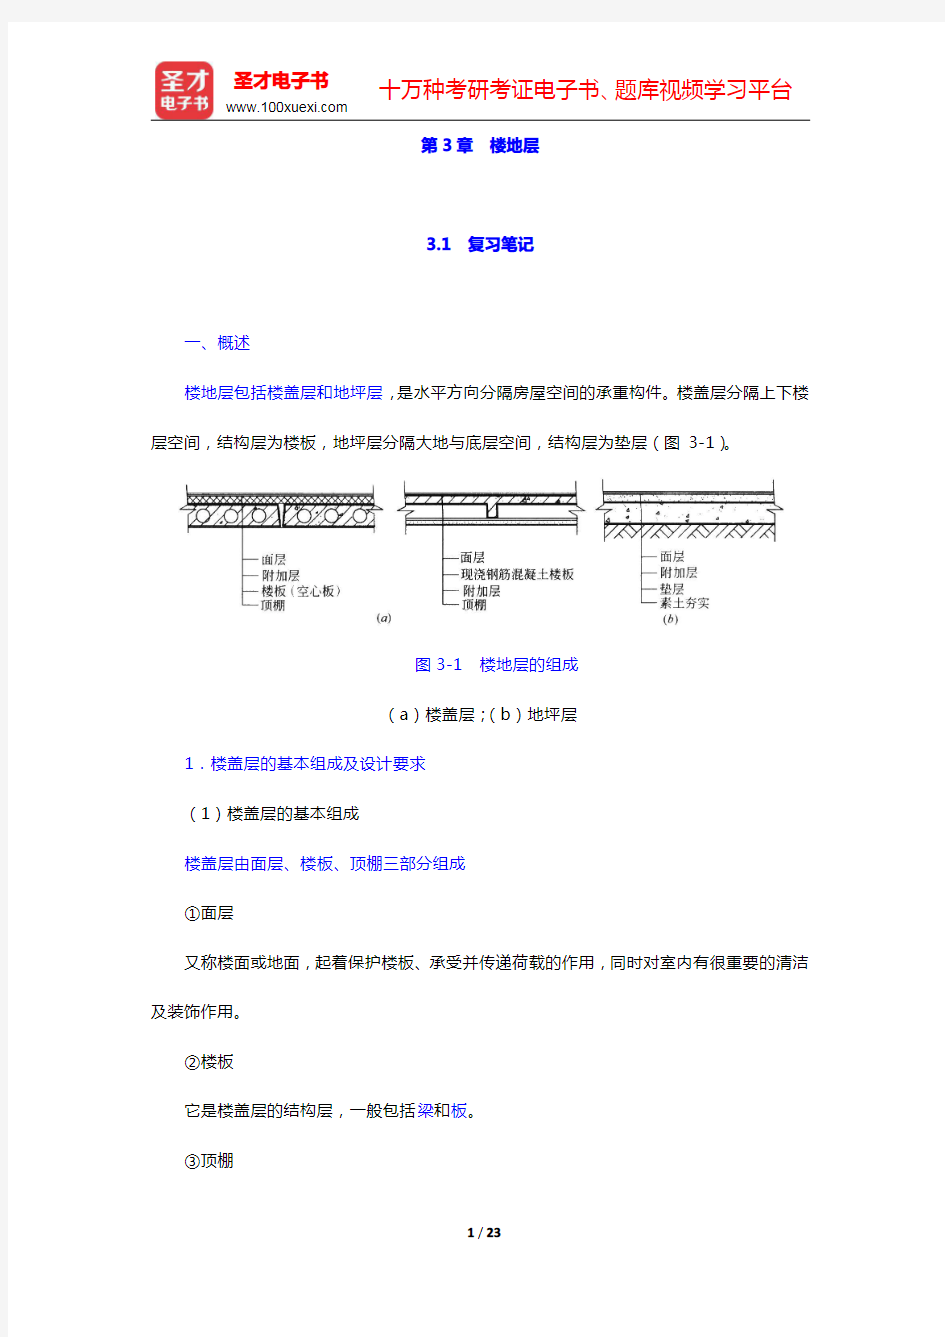 重庆大学《建筑构造(上册)》(第5版)-楼地层笔记和课后习题详解(圣才出品)